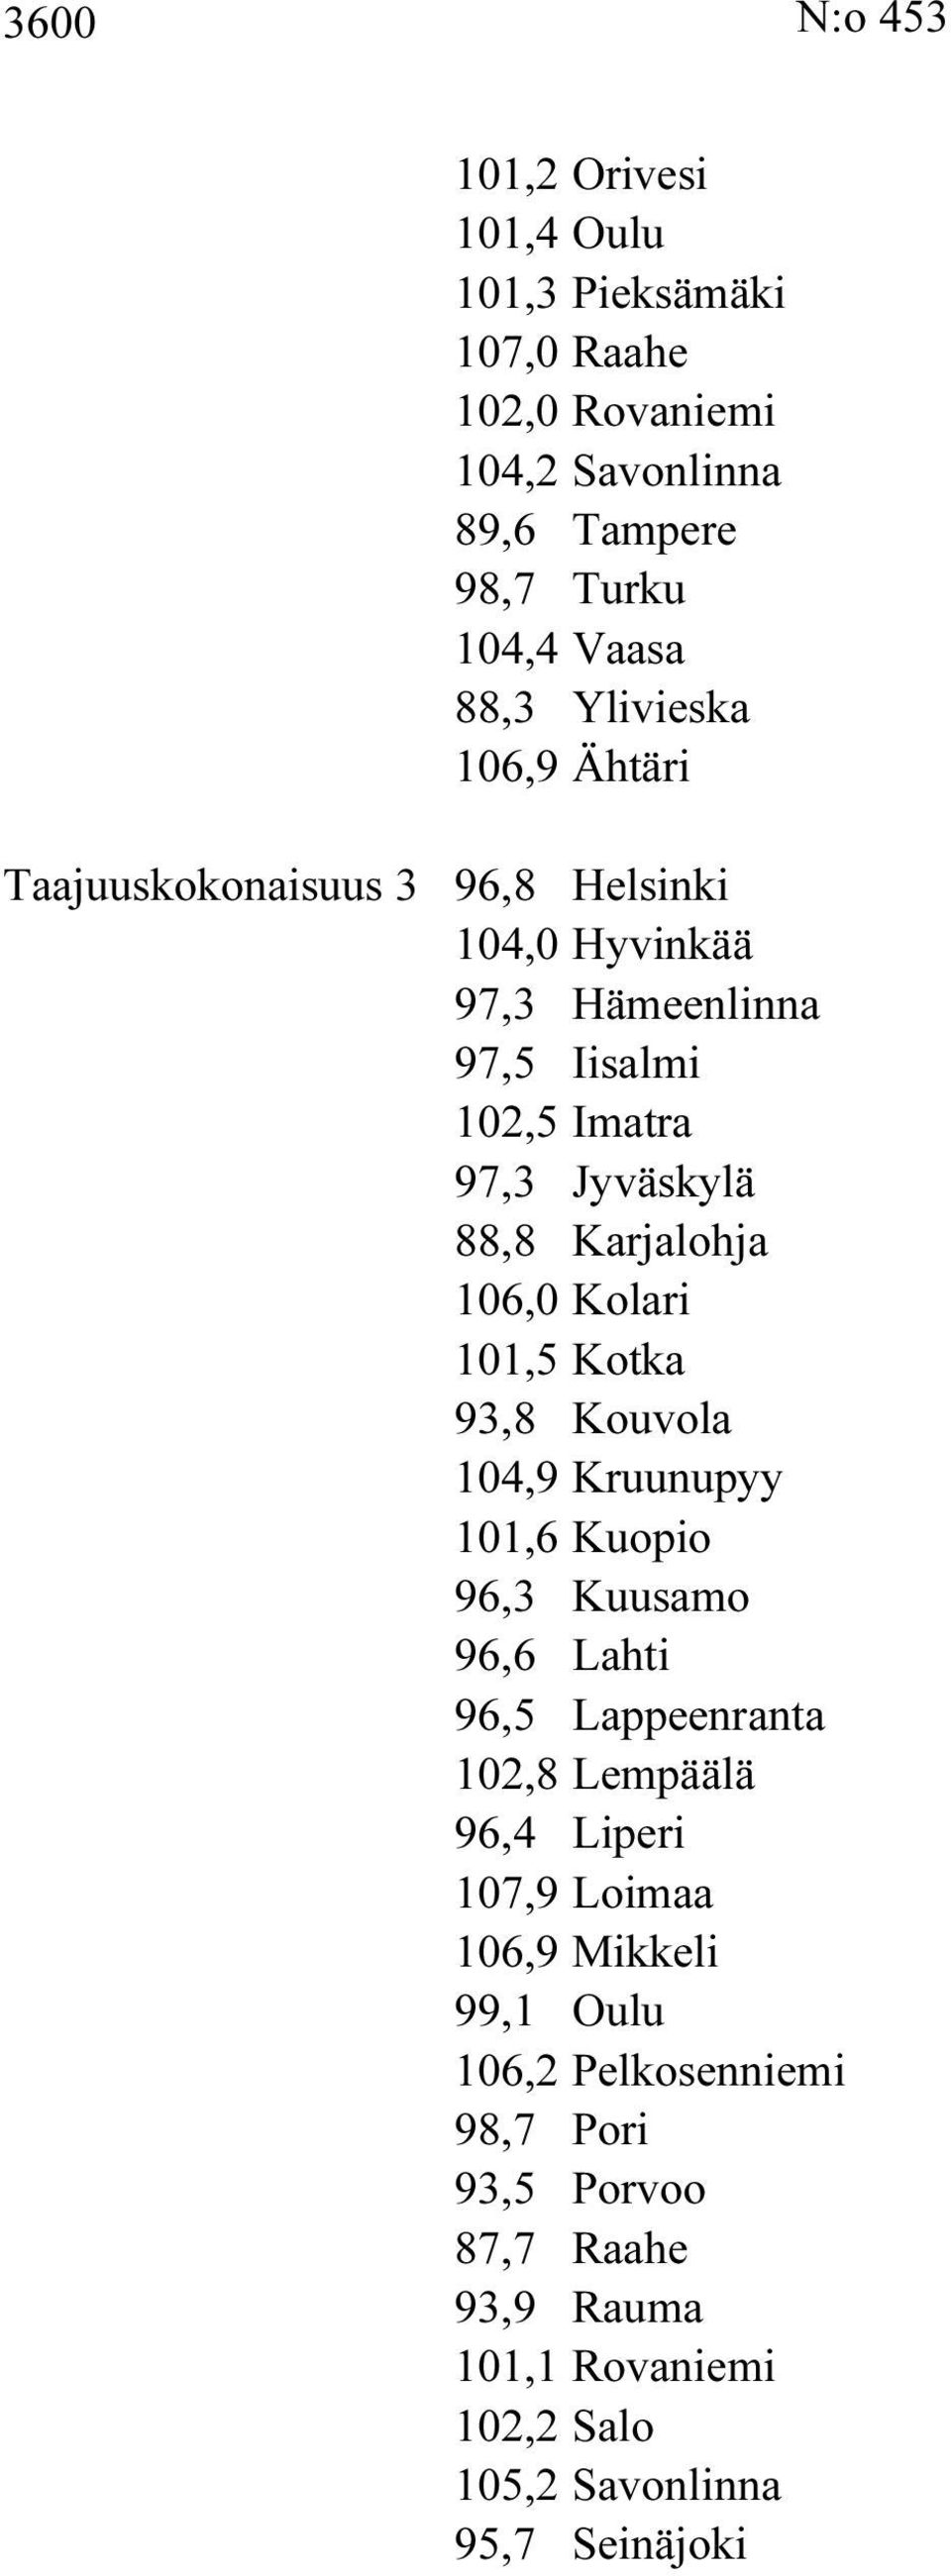 Karjalohja 106,0 Kolari 101,5 Kotka 93,8 Kouvola 104,9 Kruunupyy 101,6 Kuopio 96,3 Kuusamo 96,6 Lahti 96,5 Lappeenranta 102,8 Lempäälä 96,4